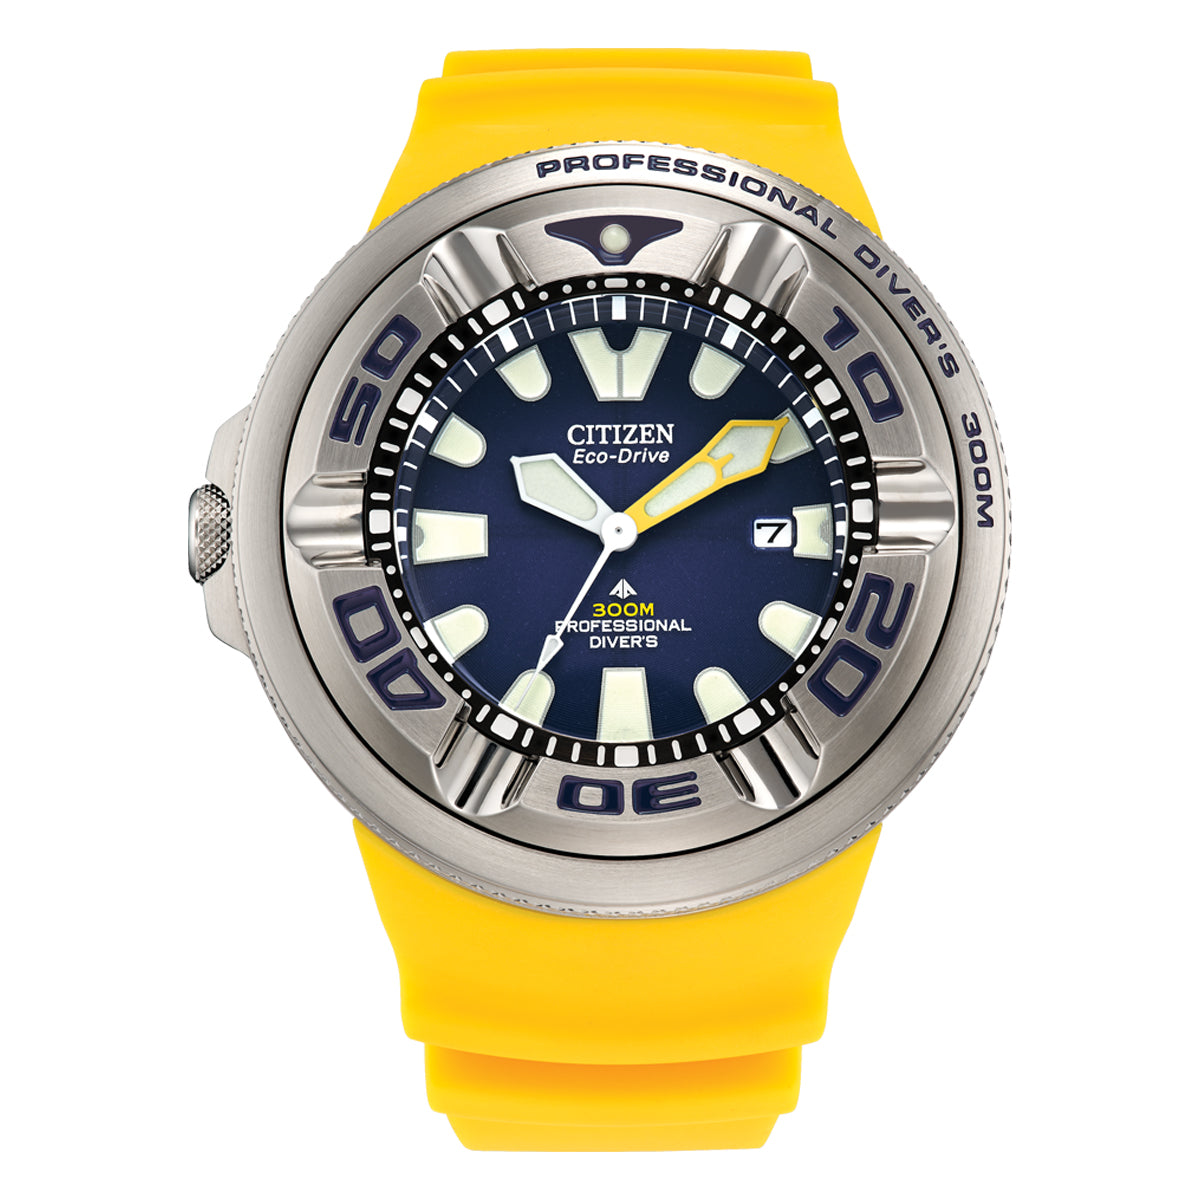 Citizen Promaster Eco-Drive Professional Diver Watch WR300m BJ8058-06L